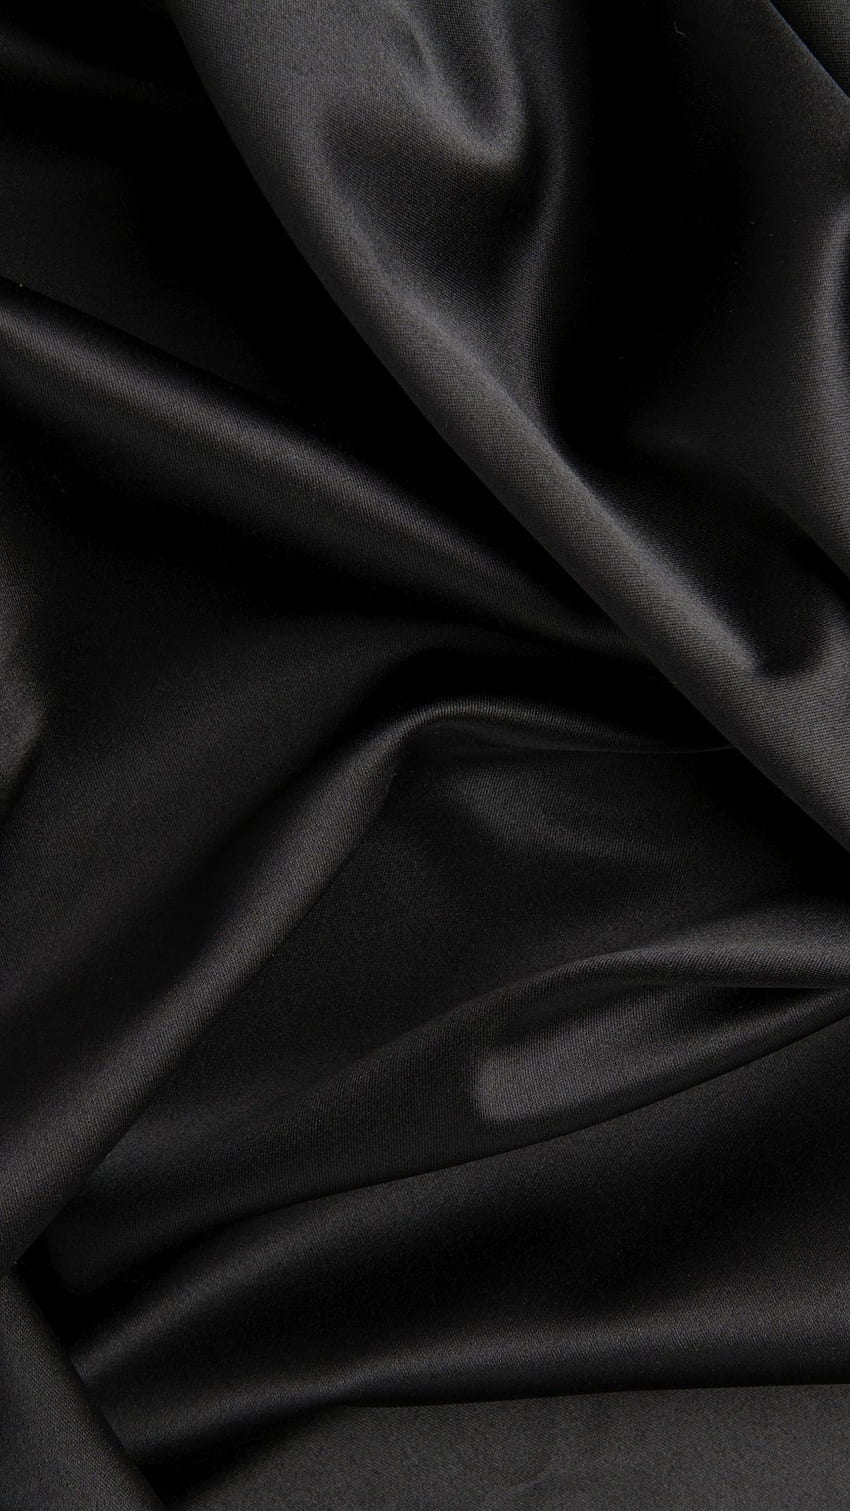 Seide, Stoff, Satin, Falten, Textur, schwarz 8156 HD-Handy-Hintergrundbild